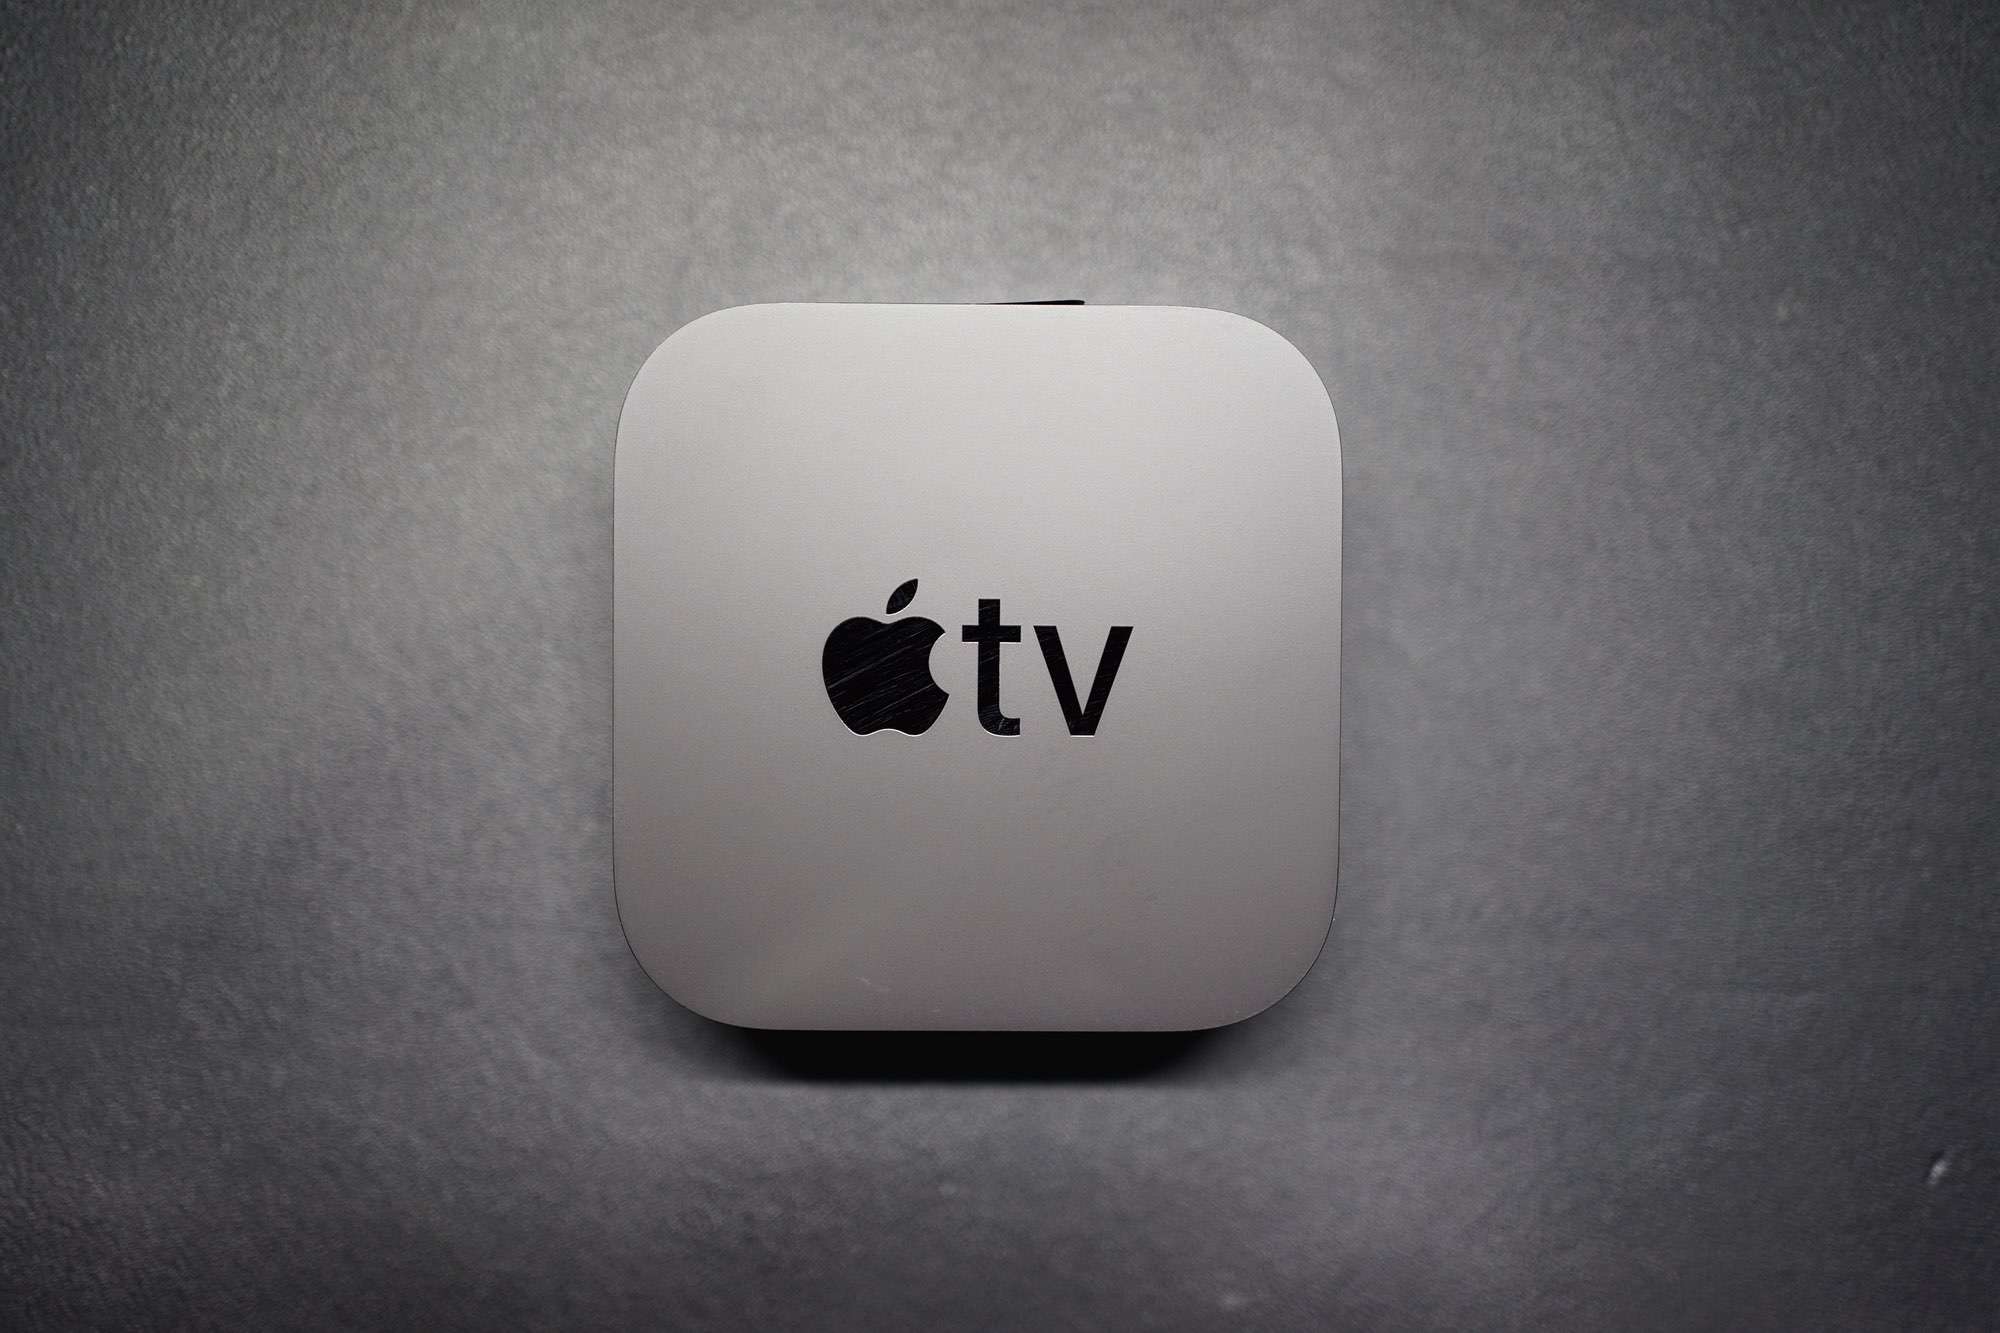 รีวิว Apple TV 4K 2021 กล่องที่ไม่ได้ดีที่ทีวี แต่ดีที่อื่น